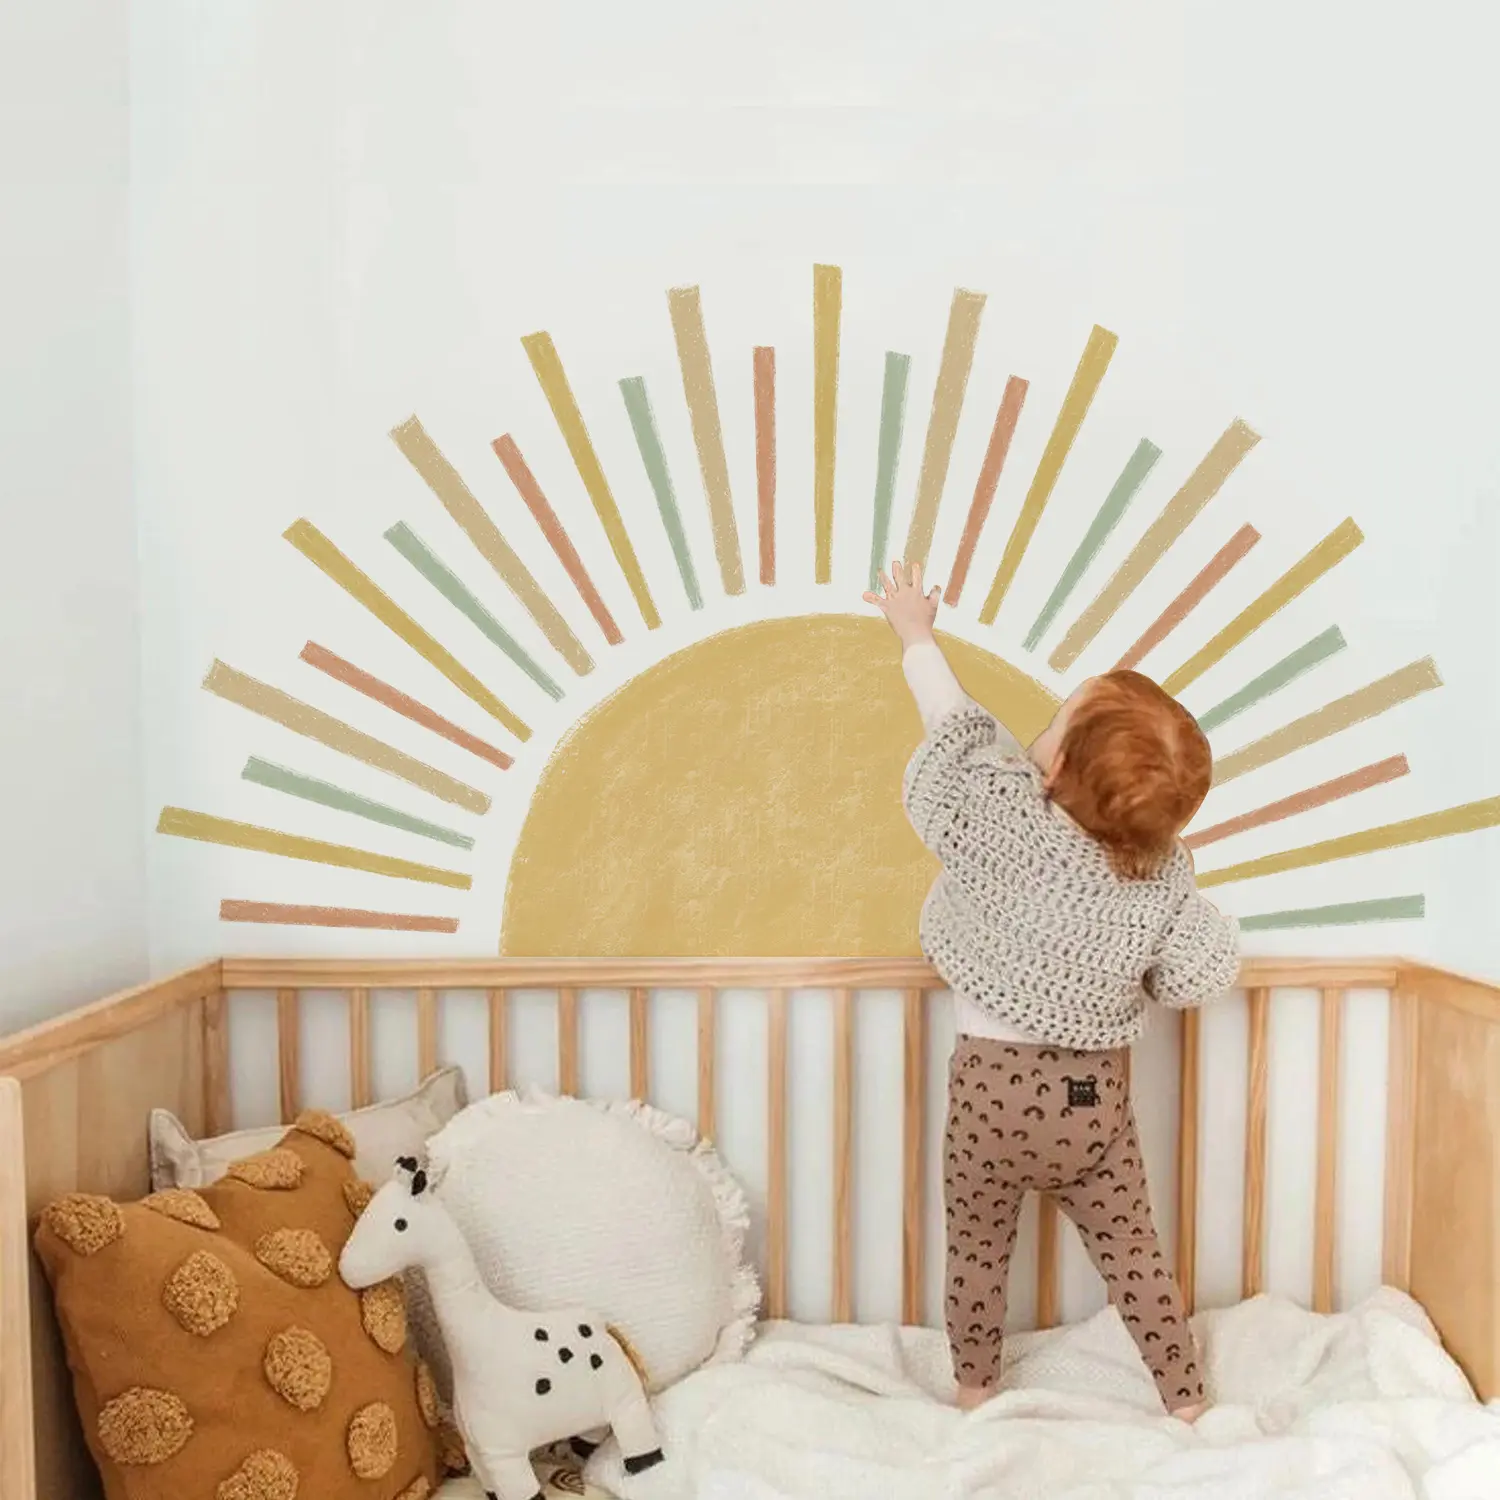 Papa Sun decalcomanie da parete Peel and Stick autoadesivo colorato Pop Sun Wall Sticker per ragazze camera da letto Decor Kids Nursery Room